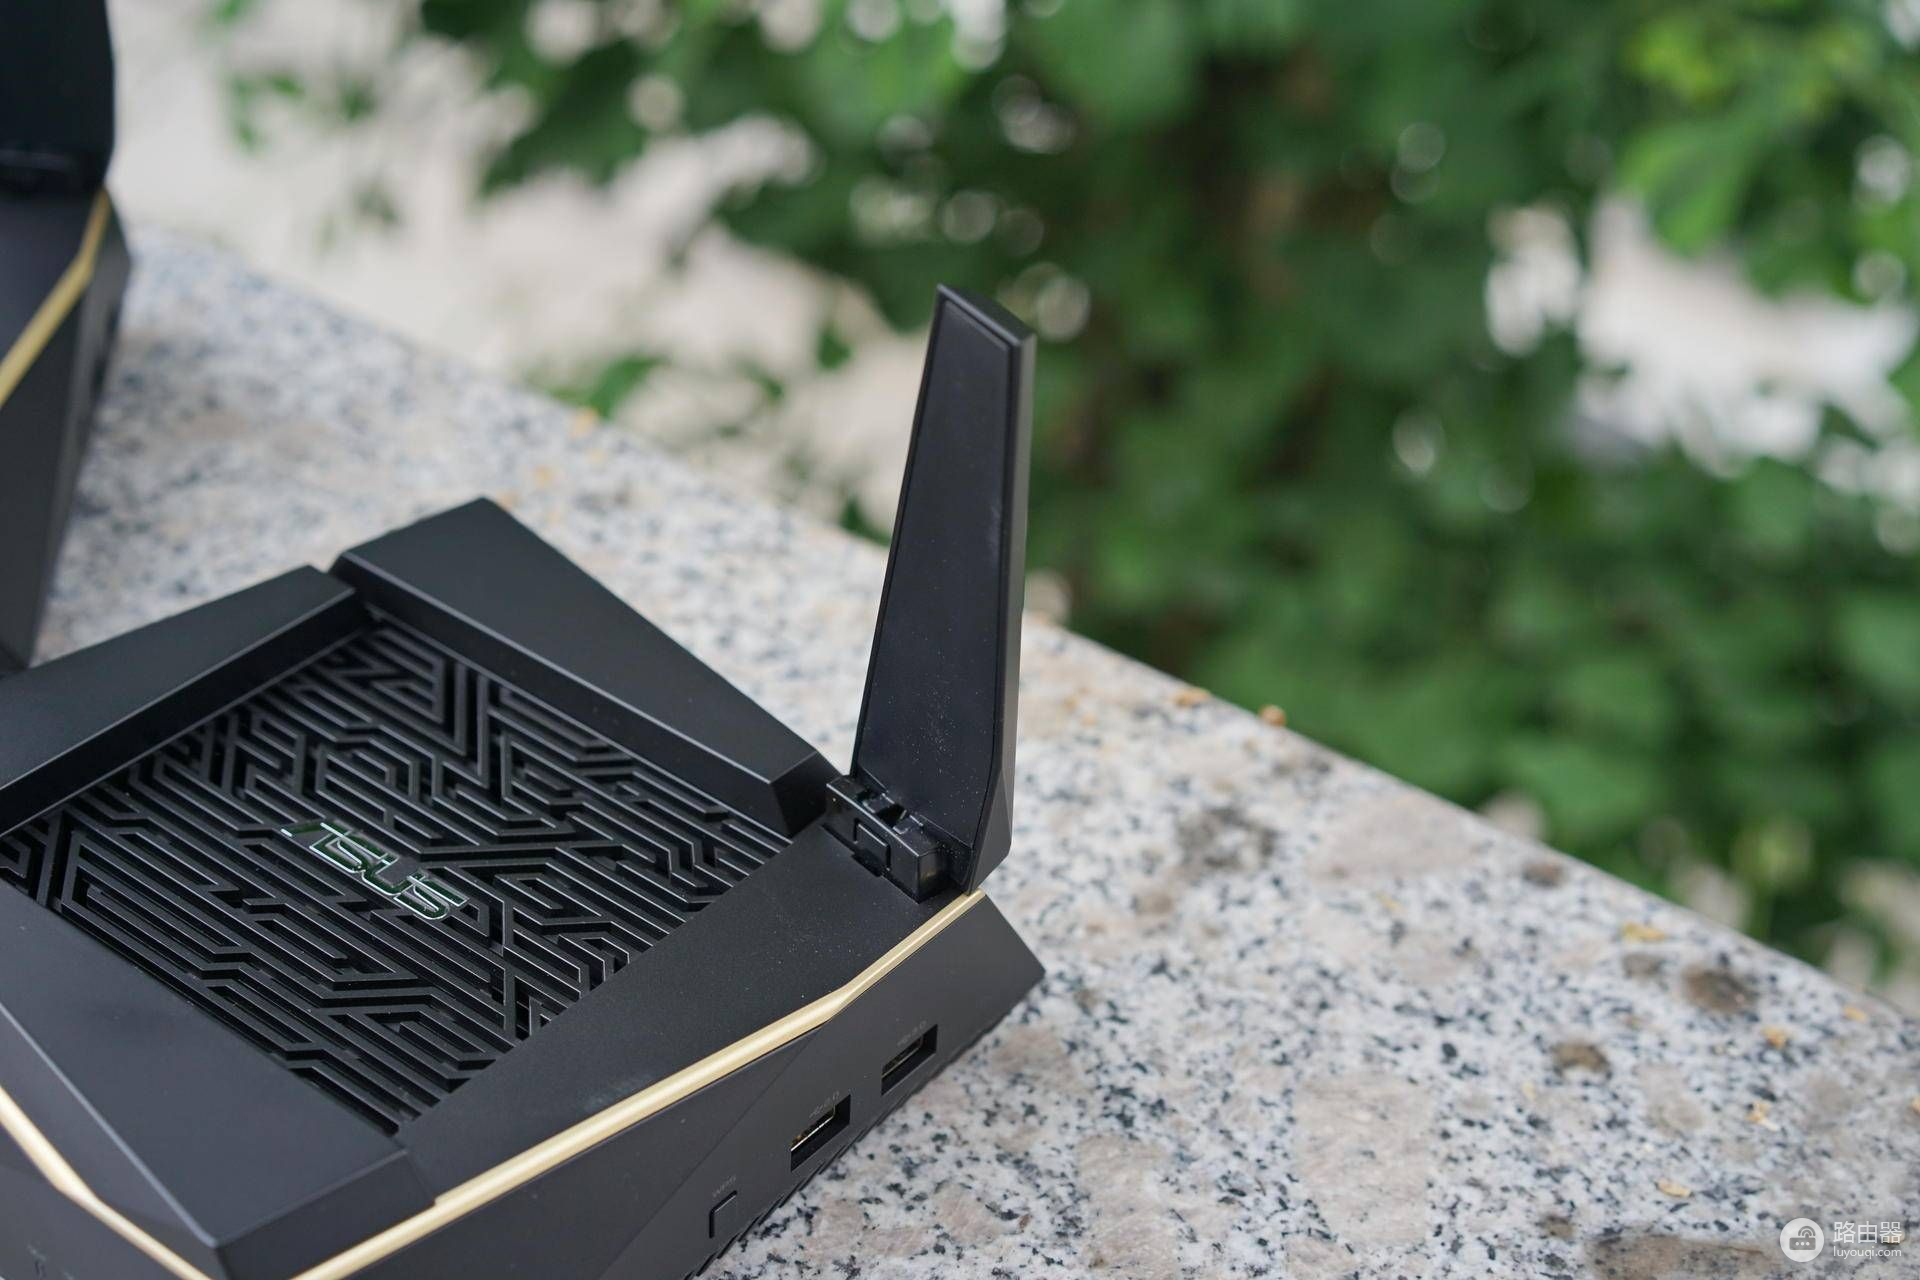 大户型别墅网络全覆盖：华硕RT-AX92U搭载Wi-Fi6路由器使用评测